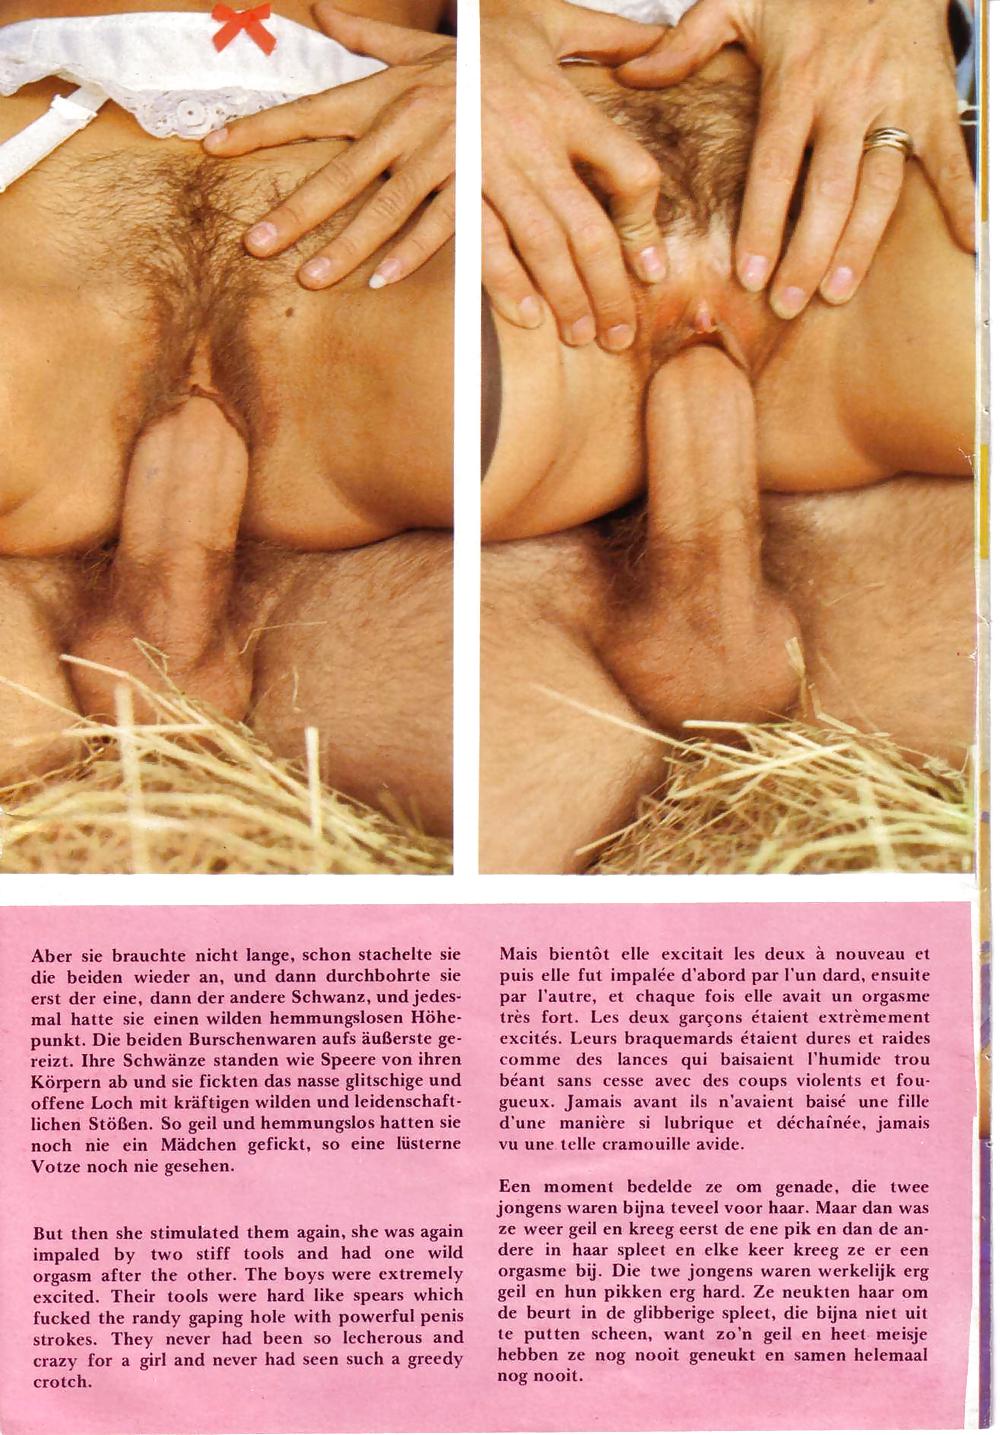 Vintage Asshole Love 3 Porn Pictures Xxx Photos Sex Images 556700